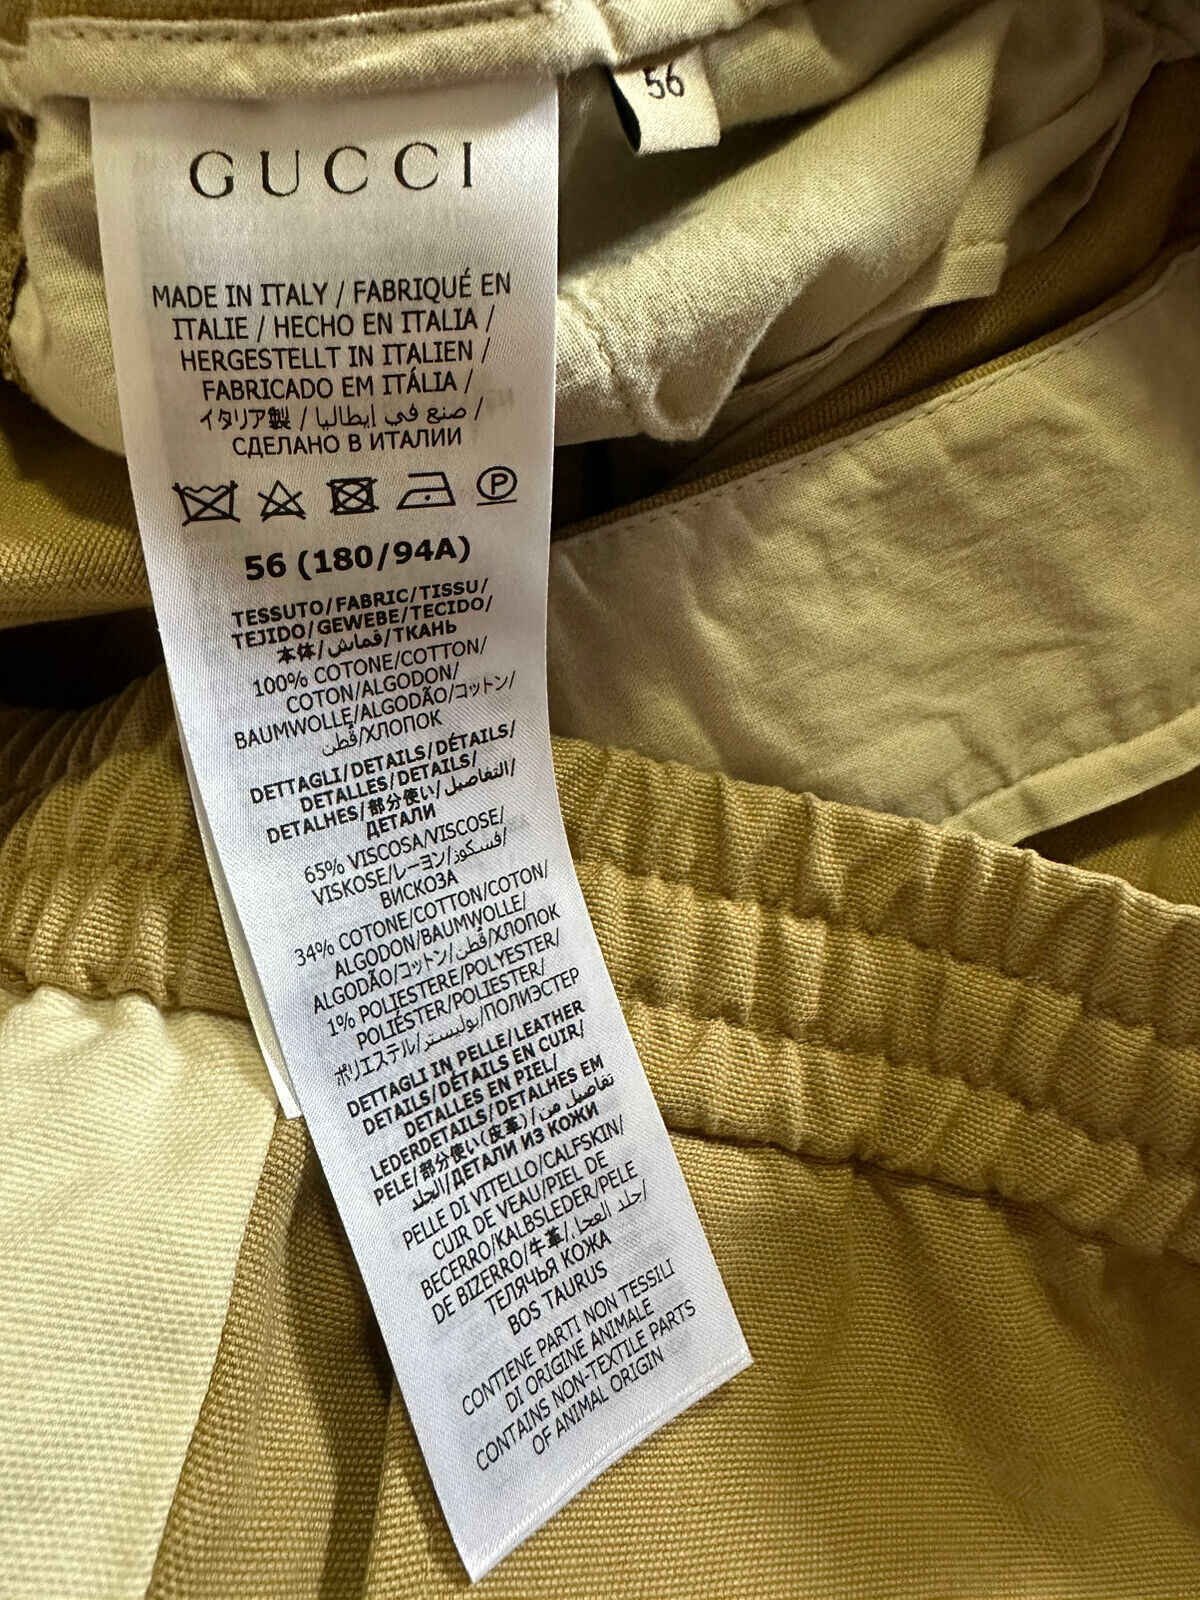 Neu mit Etikett: 1400 $ Gucci Herren-Shorts aus leichtem Baumwoll-Canvas, DK Beige/Mul. 40 US/56 Eu